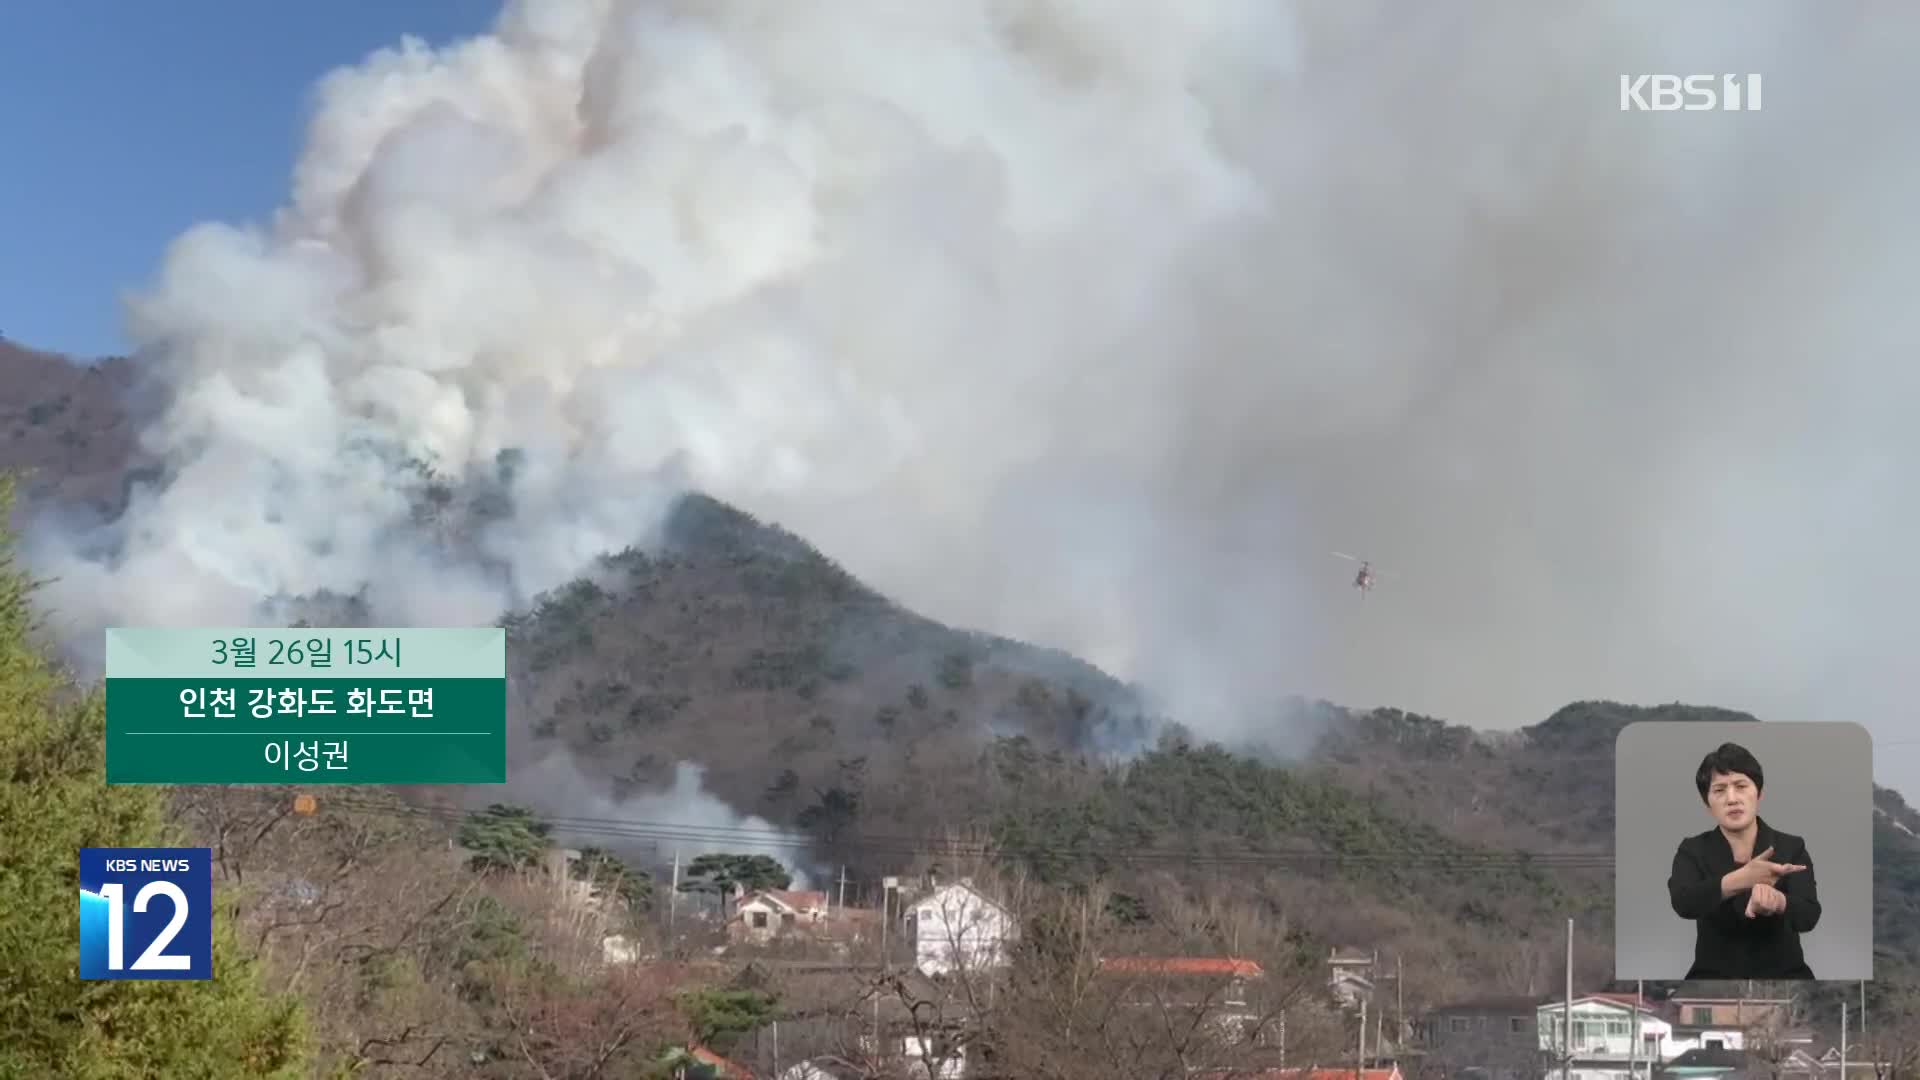 인천 마니산 산불 17시간 만에 진화…22ha 피해